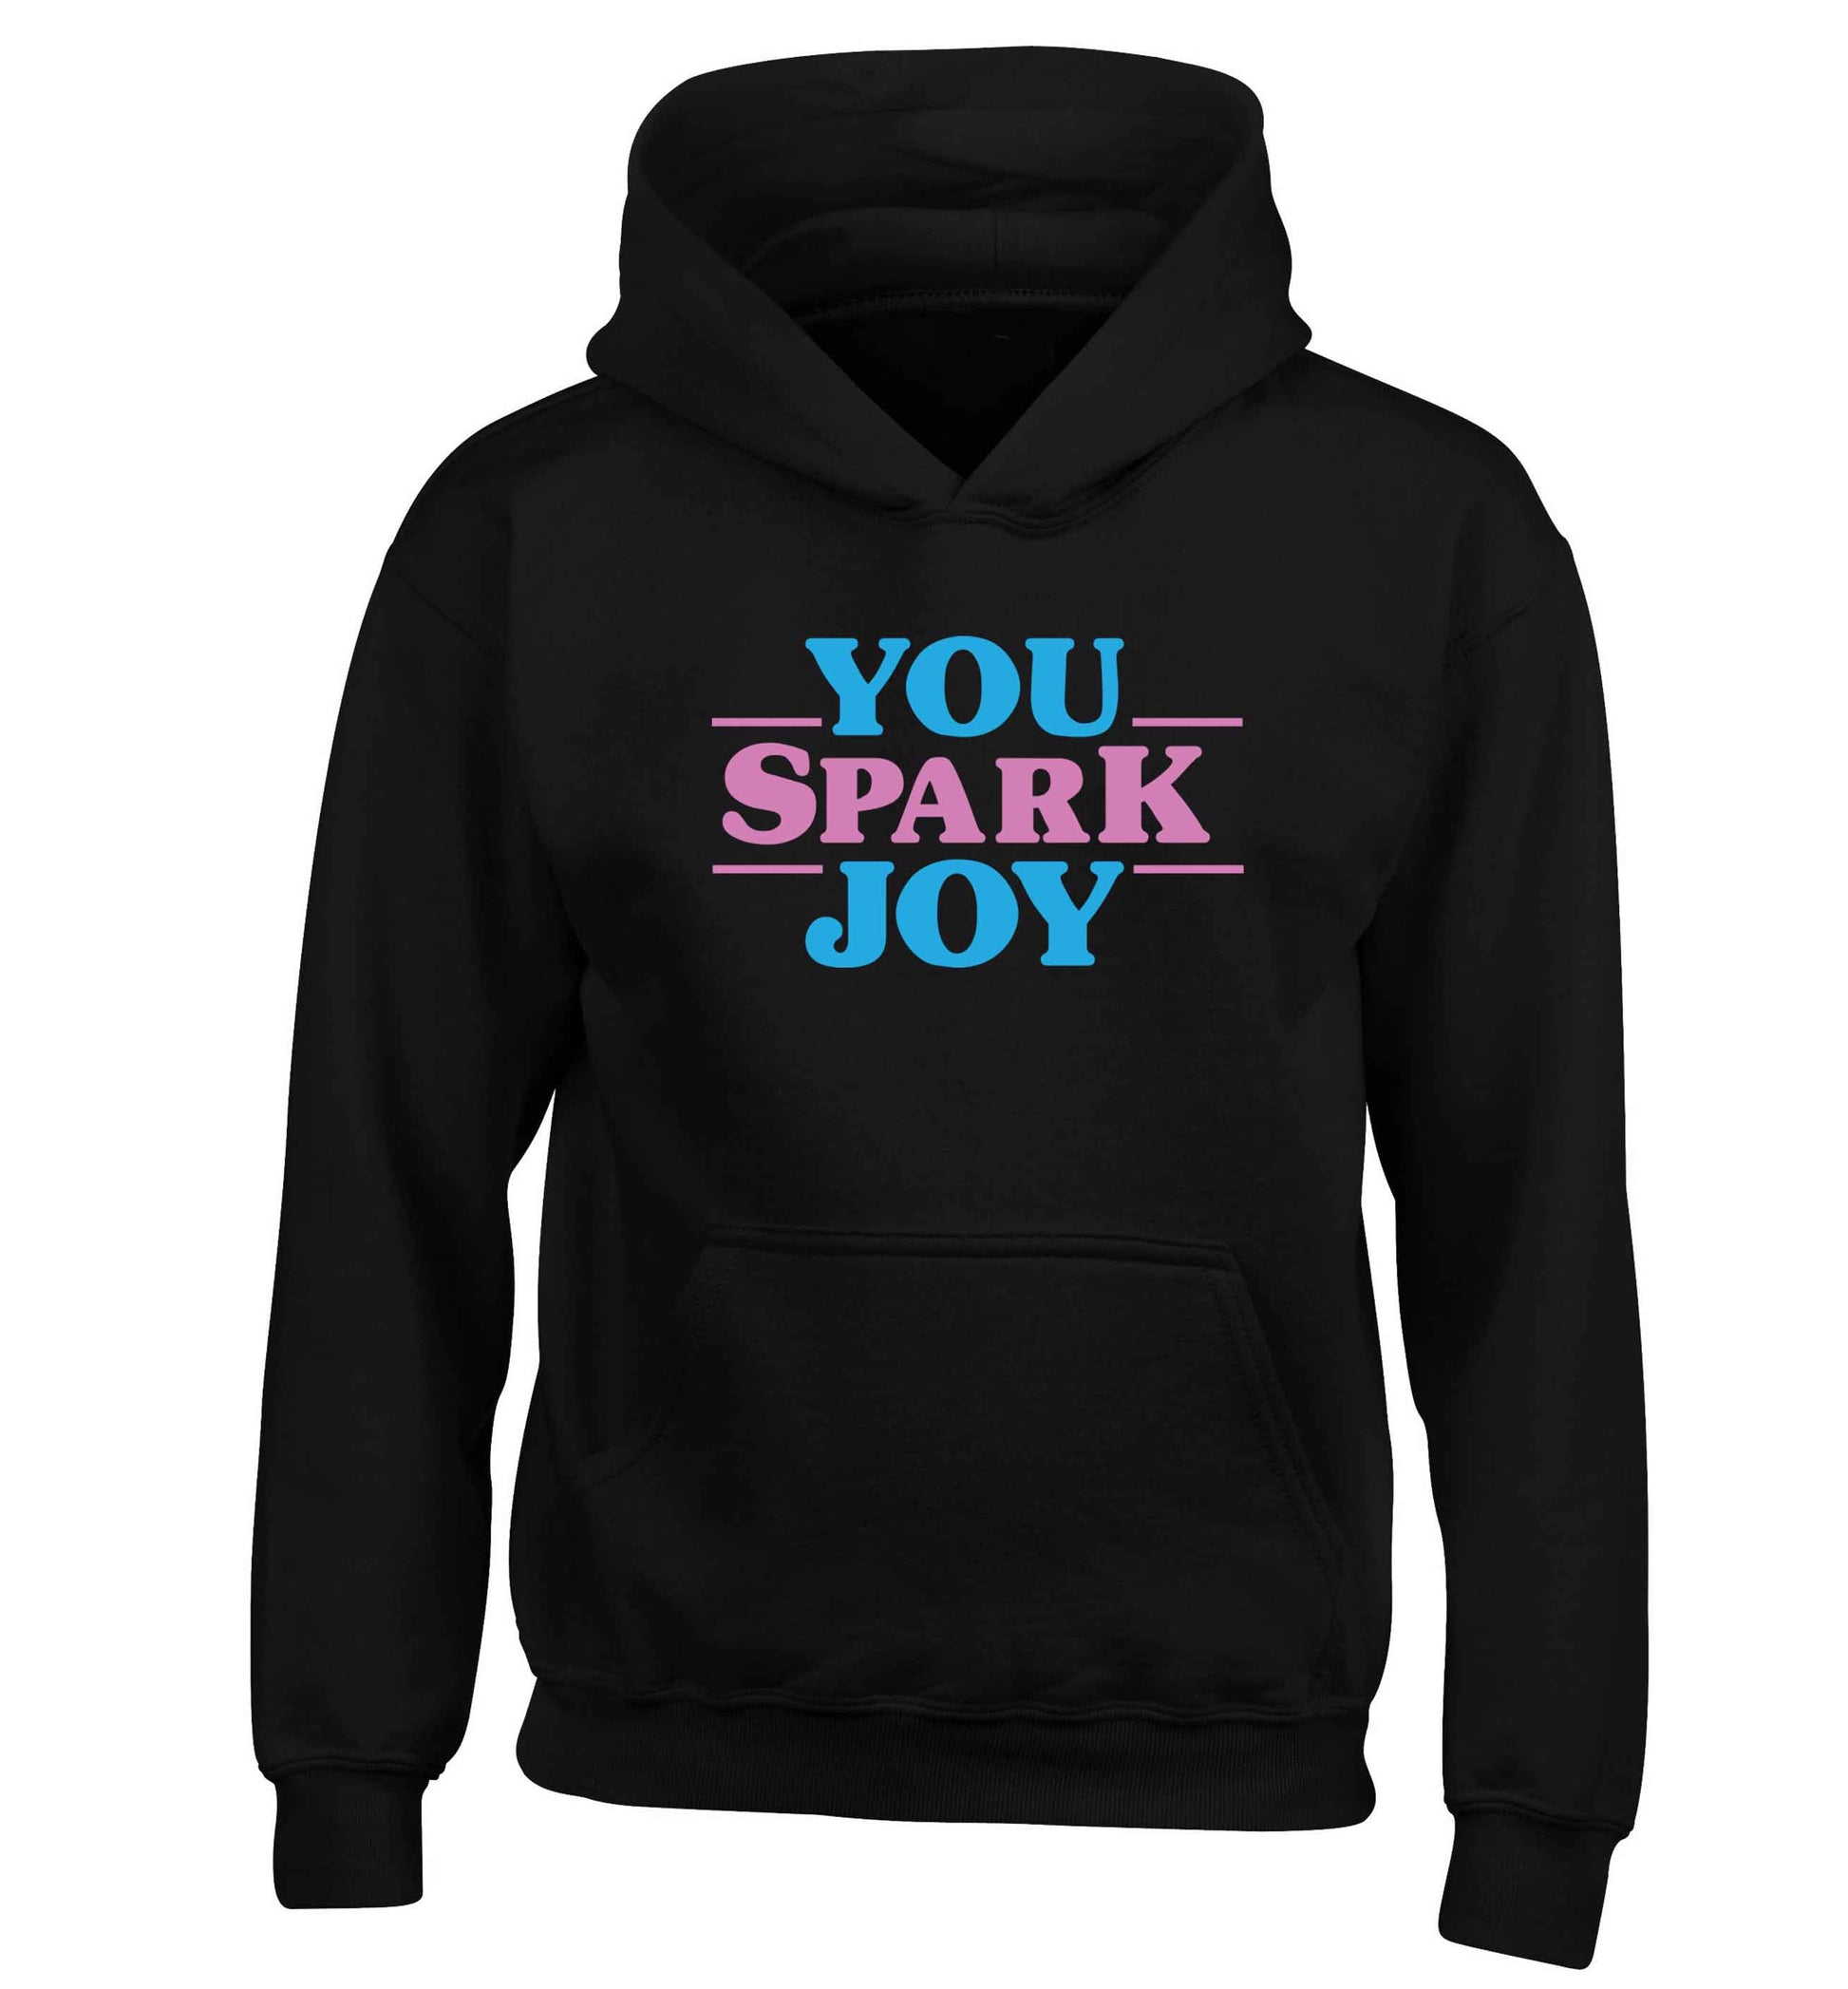 You spark joy children's black hoodie 12-13 Years